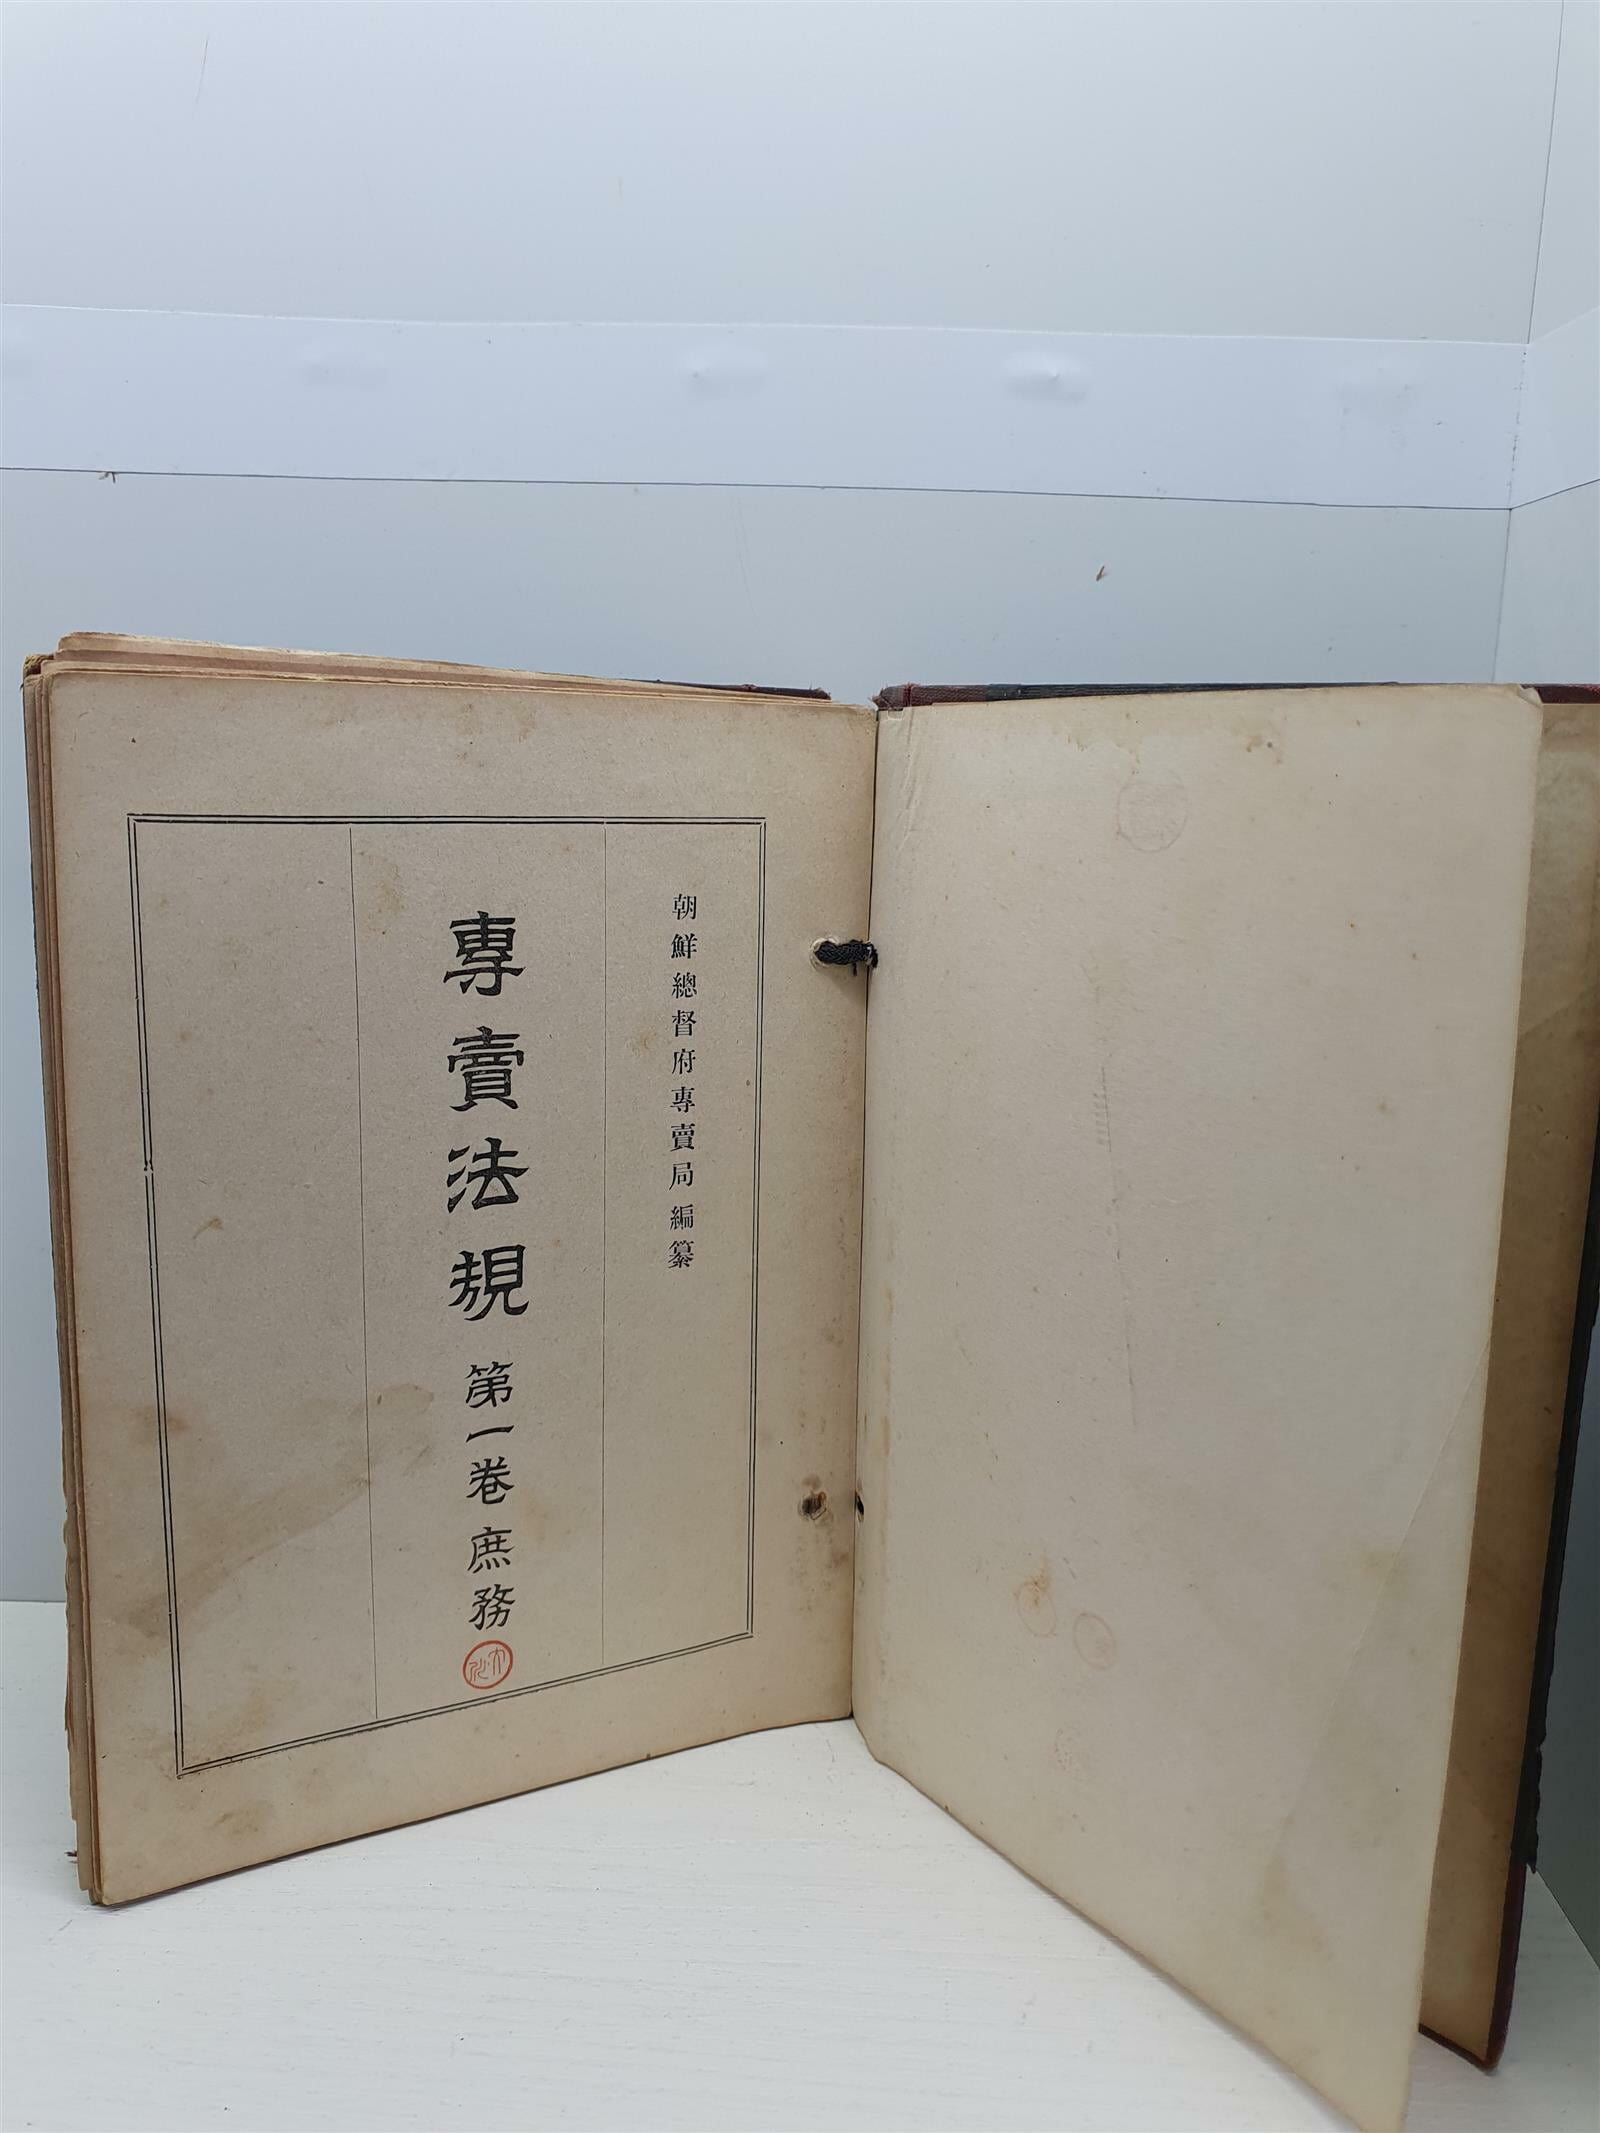 전매법규 제1권 서무 (조선총독부전매국 편찬 / 1941년)